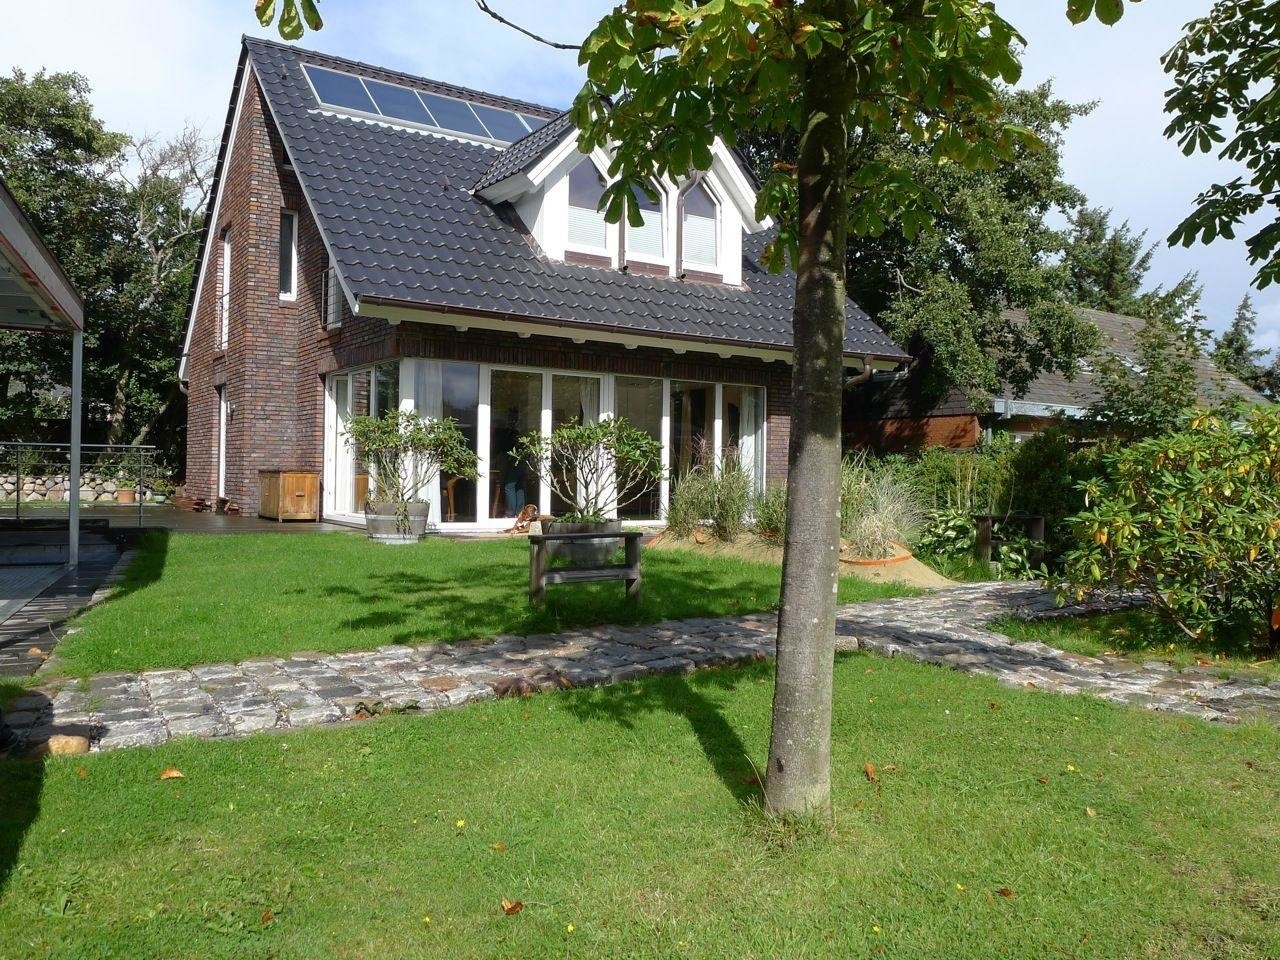 Haus Hookipa, App. 1 Ferienwohnung in Westerland